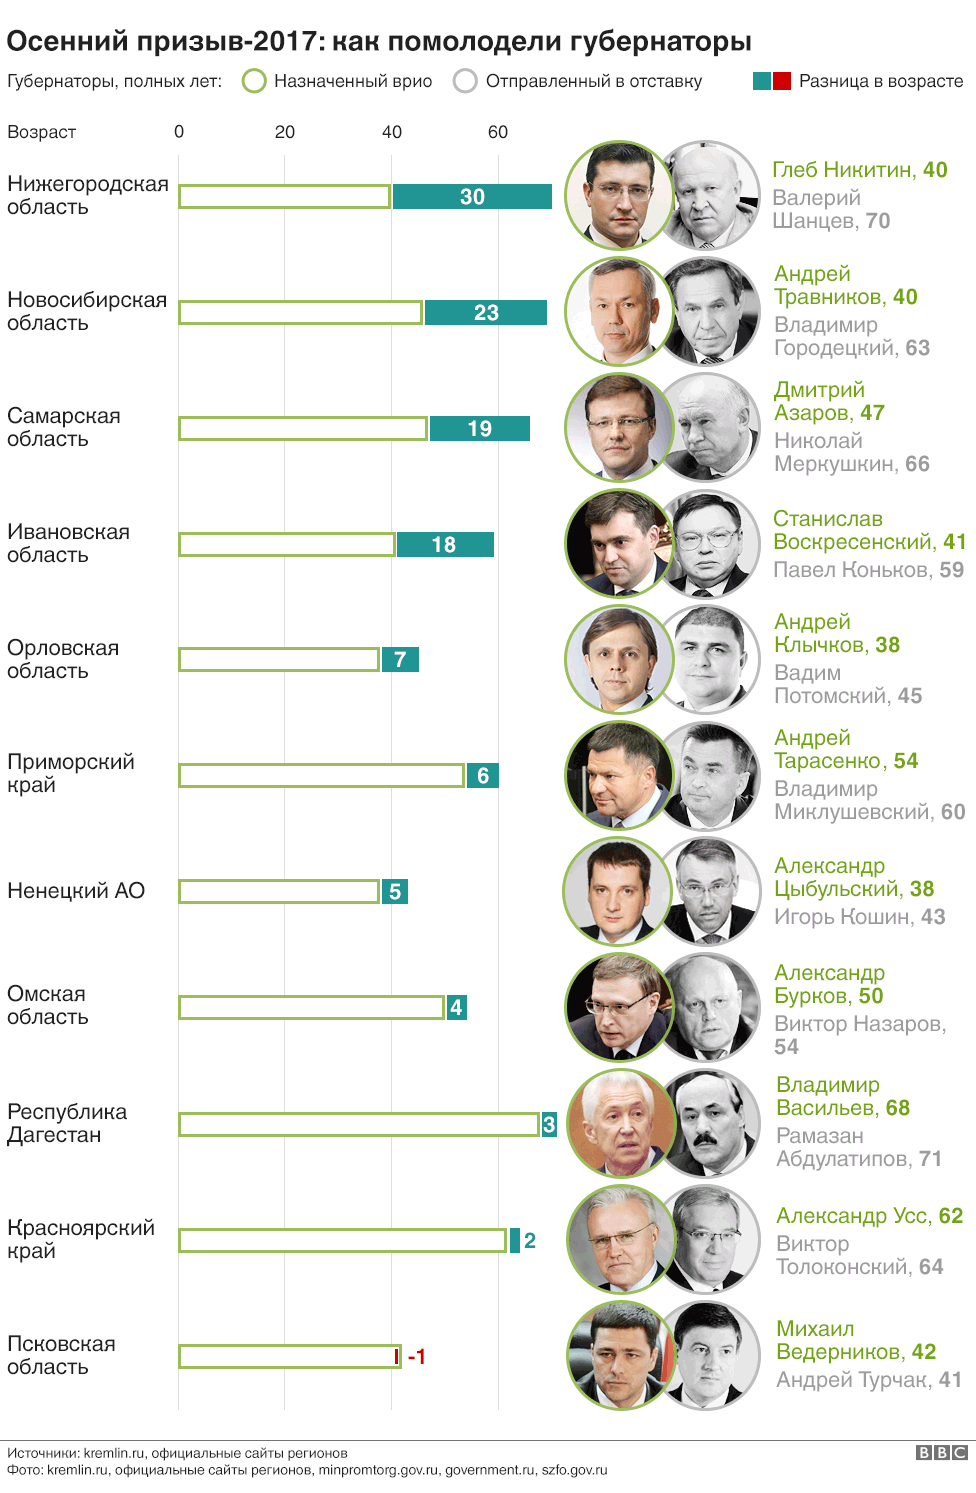 Российские губернаторы "помолодели" на 116 лет